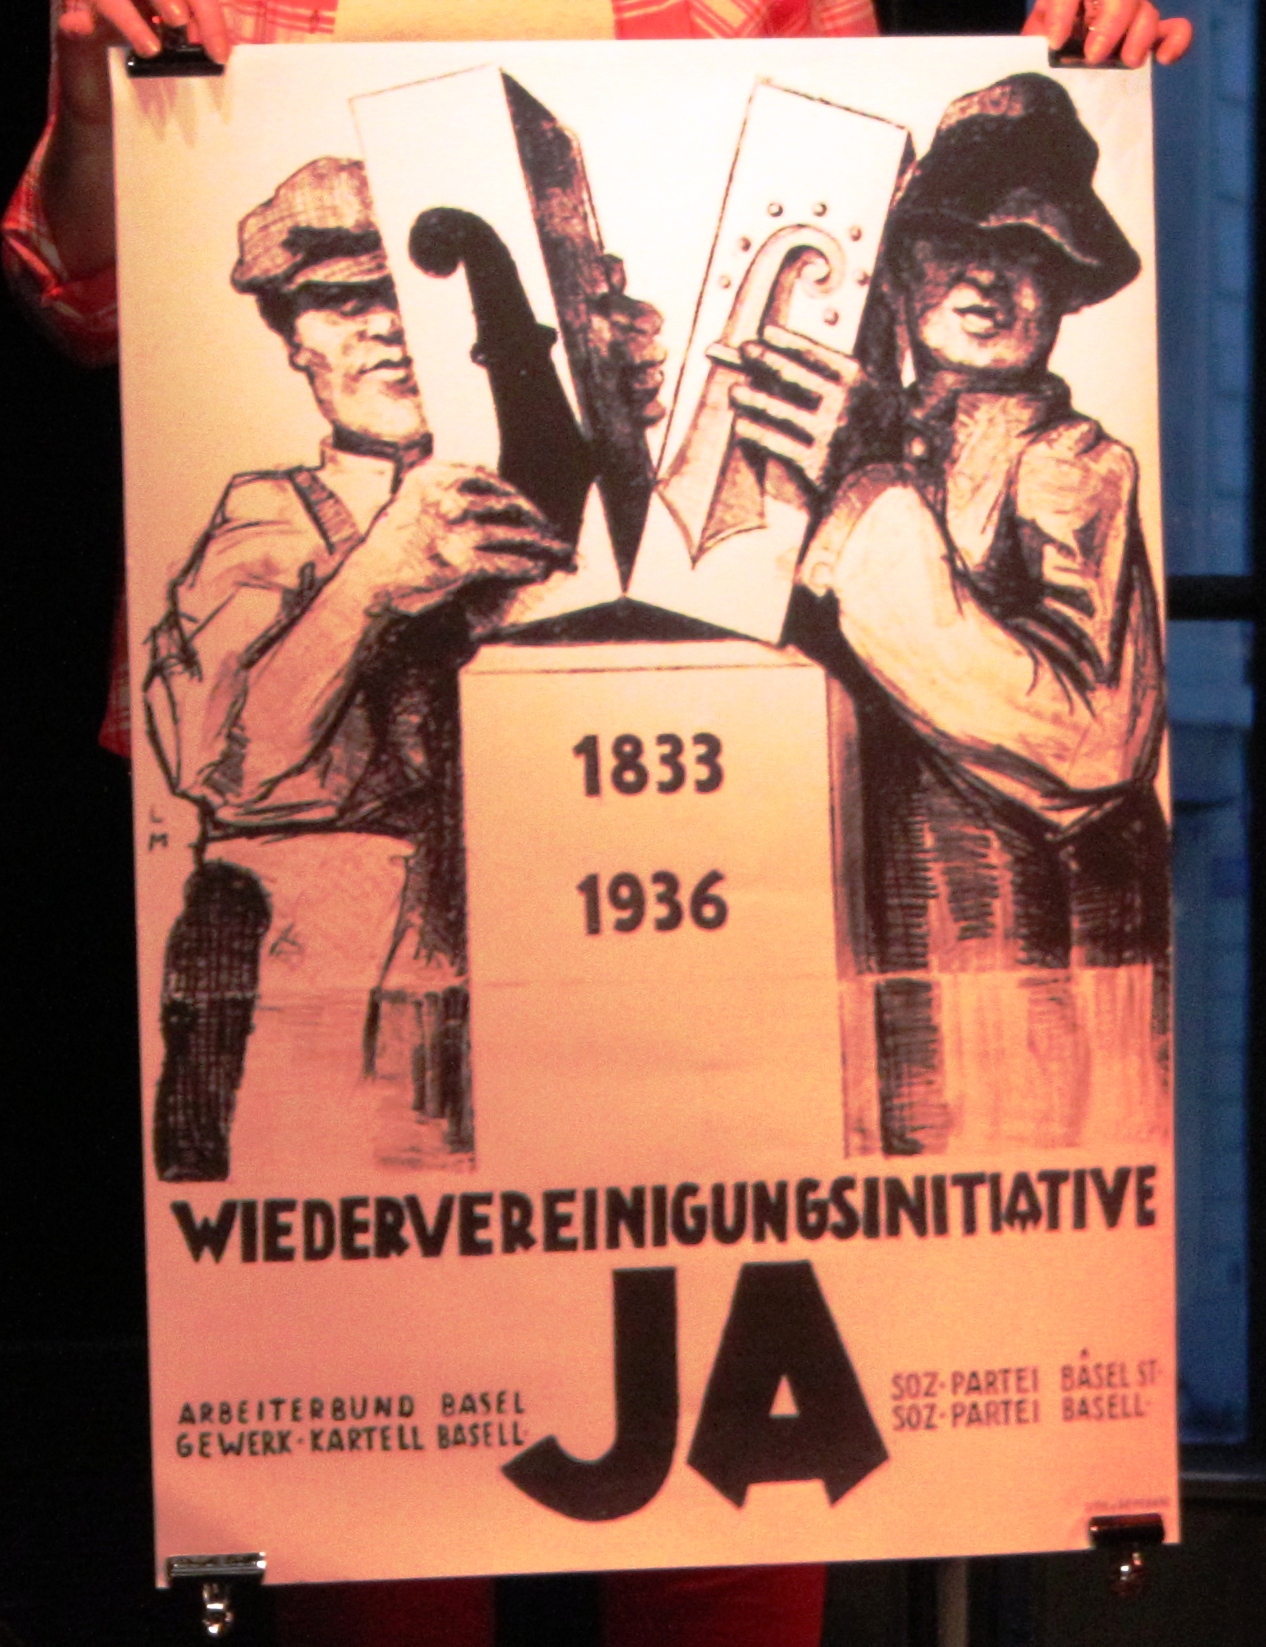 Plakat zur Wiedervereinigungsinitative vom 23. Februar 1936 von Louis Moor.